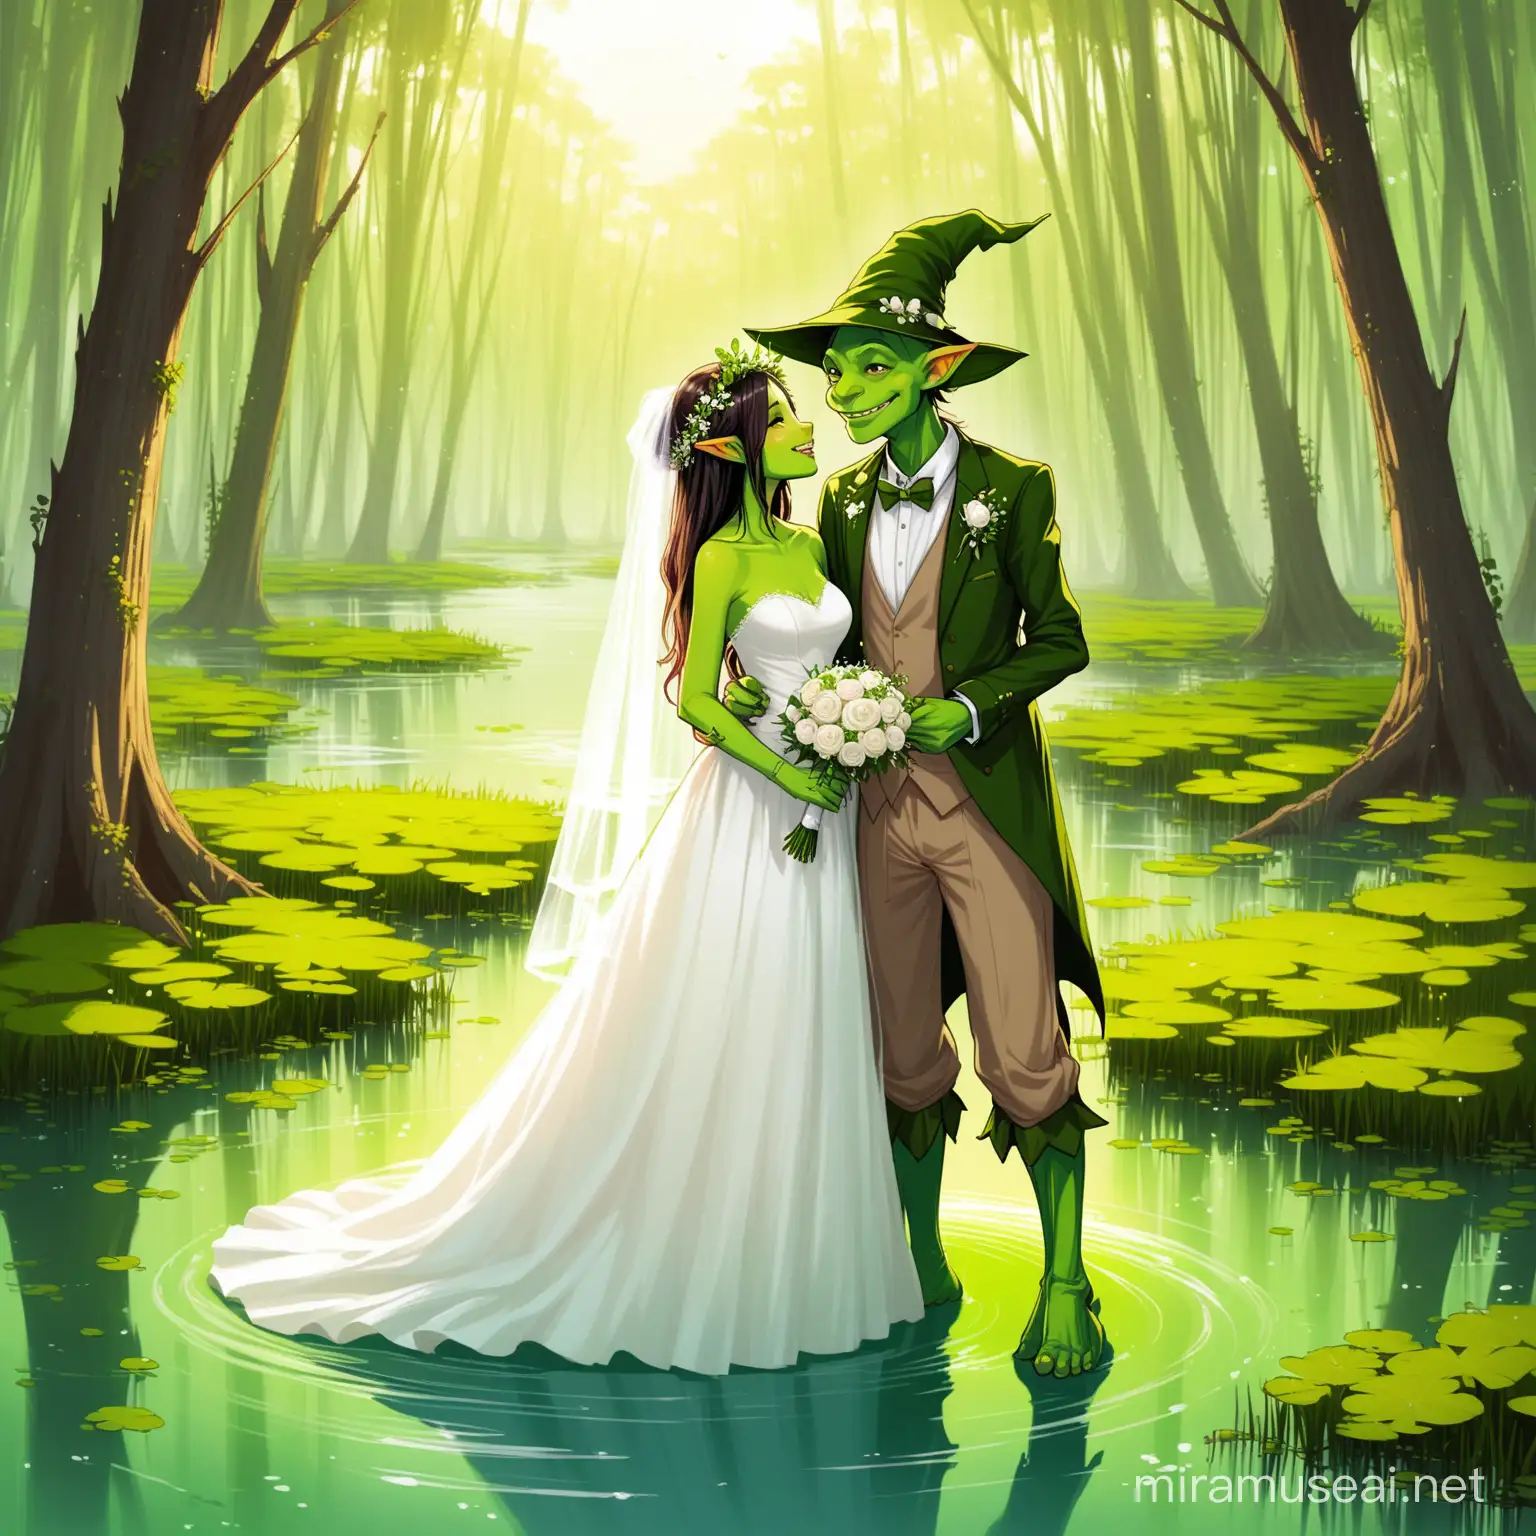 Enchanting Goblin Wedding in a Mystical Swamp Setting